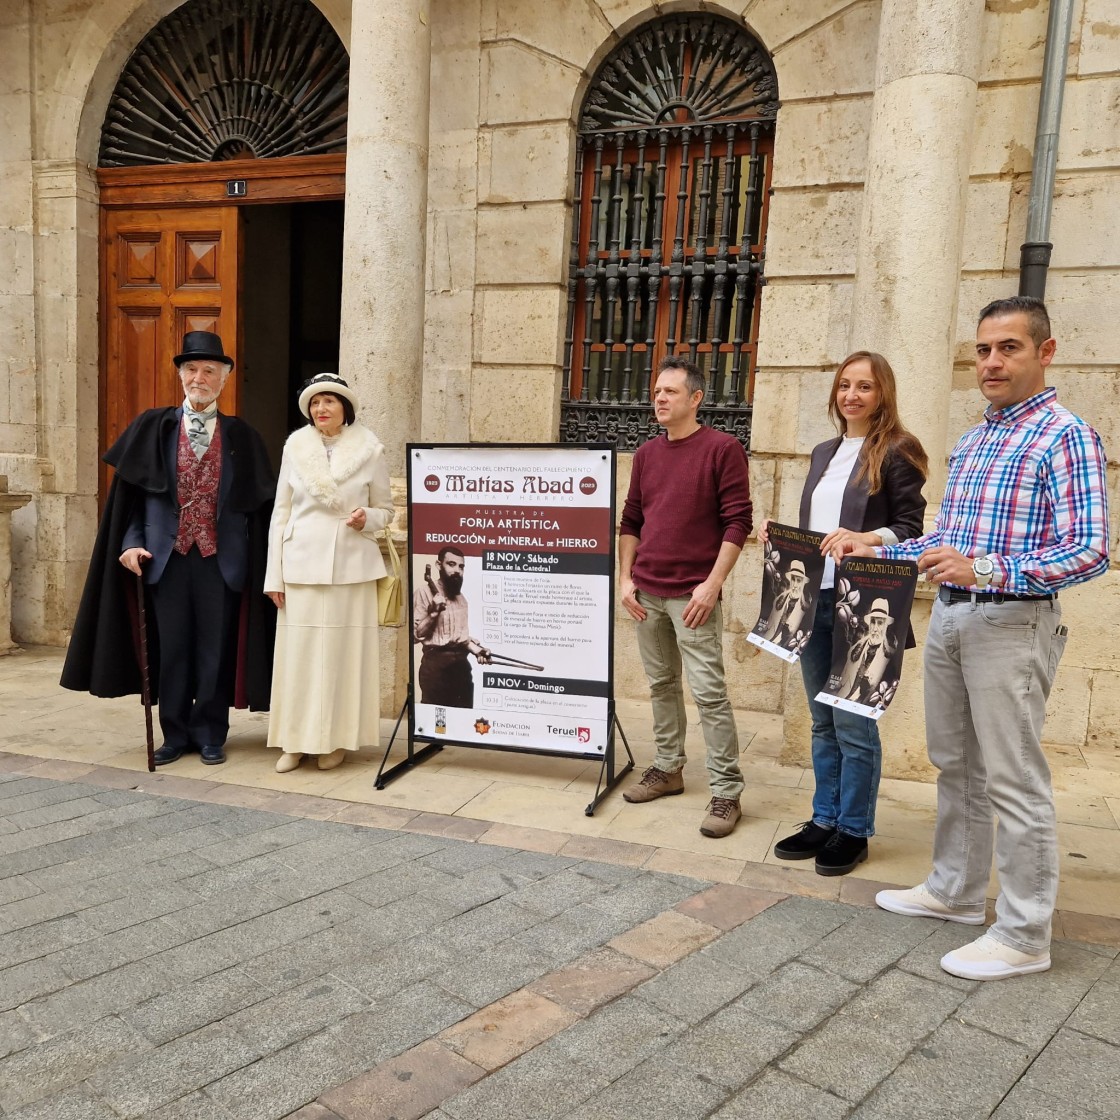 La ciudad de Teruel vuelve a 1912 para celebrar la Semana Modernista, del 14 al 19 de noviembre